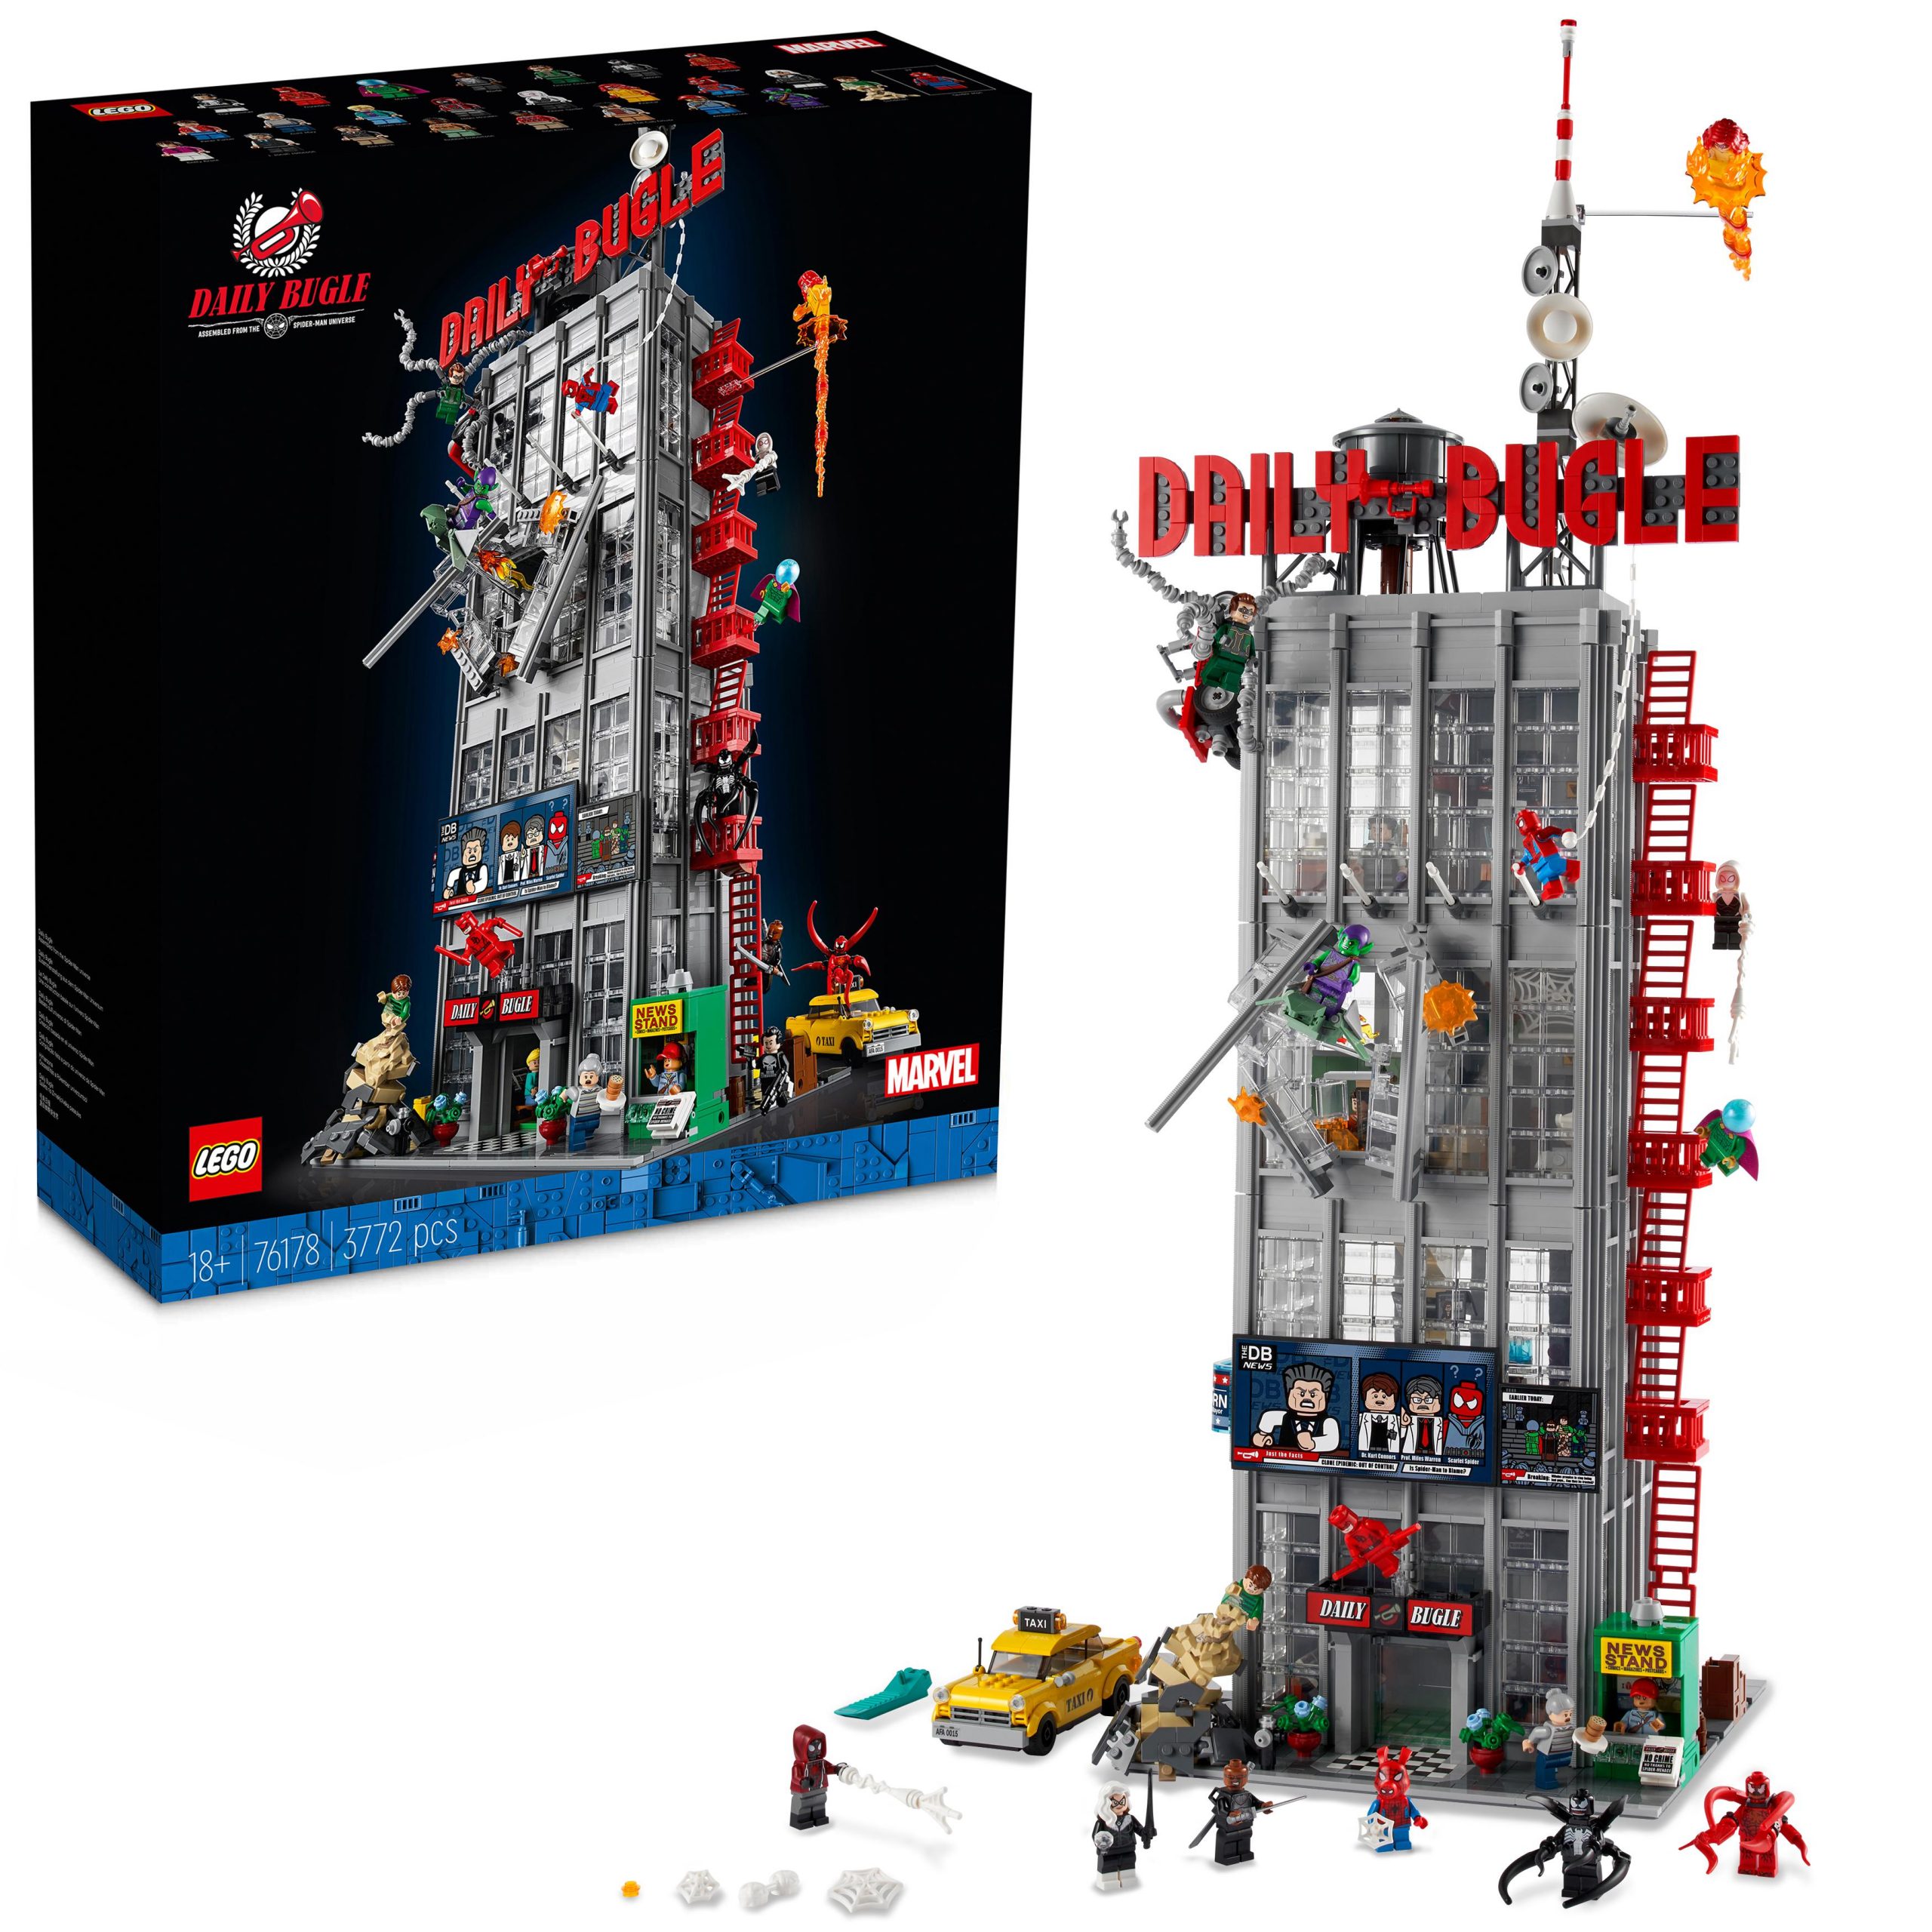 Rivelati la data di uscita, i prezzi e le immagini dei LEGO 40460